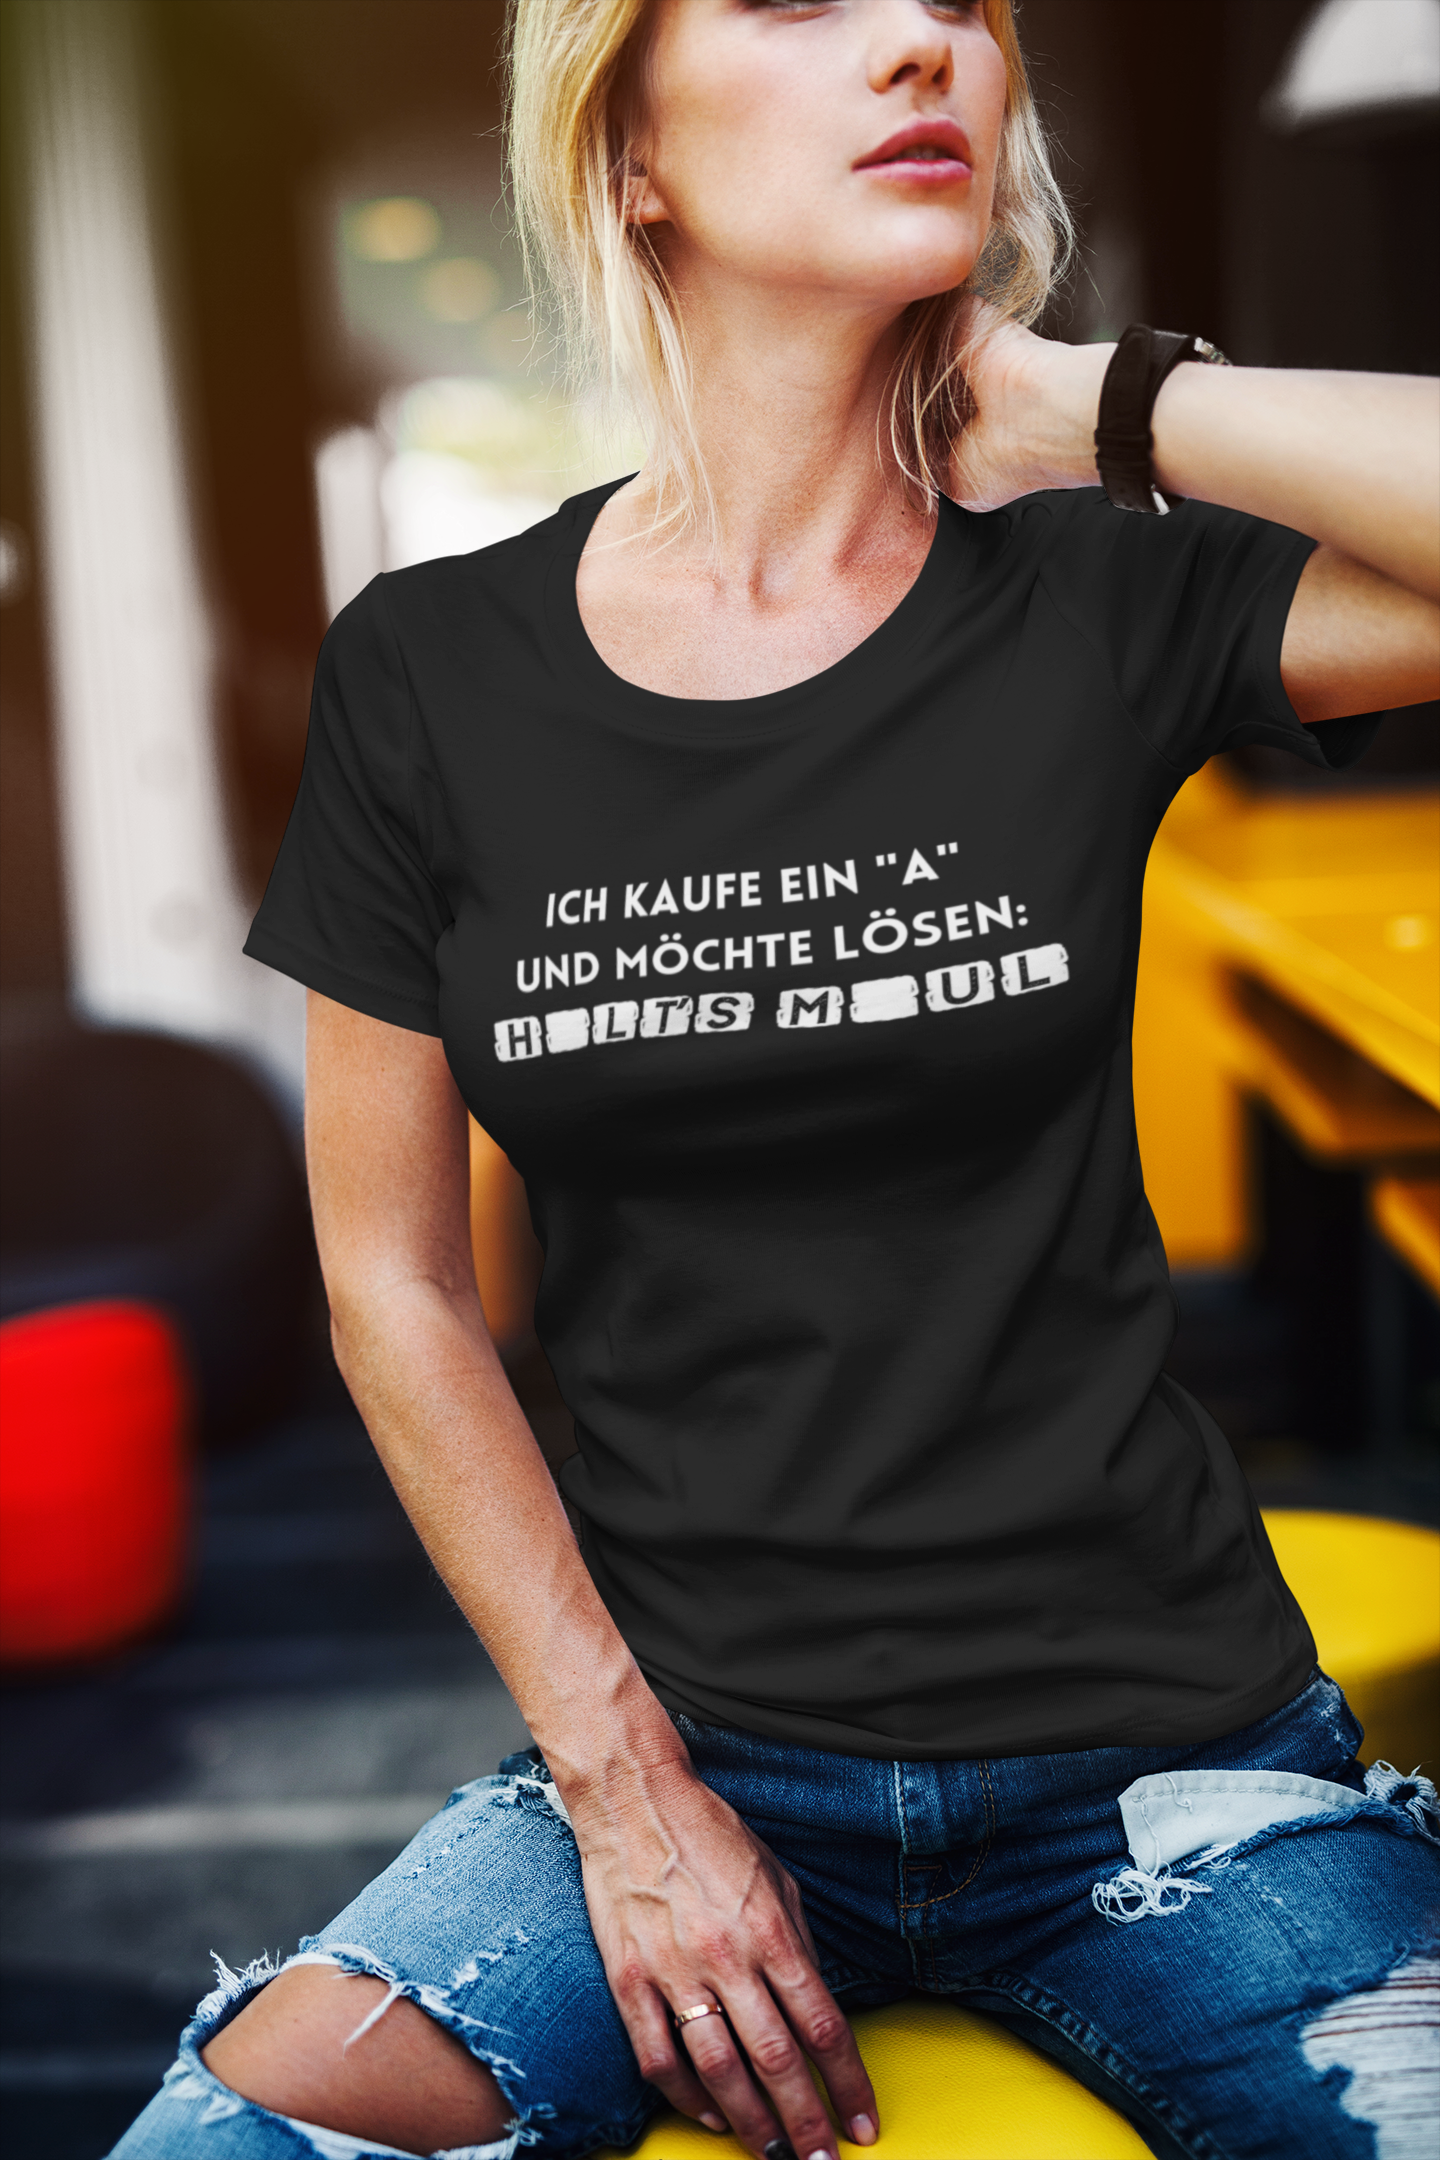 Ích kaufe ein a und möchte lösen: Halt´s Maul - Ladies Premium Shirt –  Lieblingsfrech by AMORIE